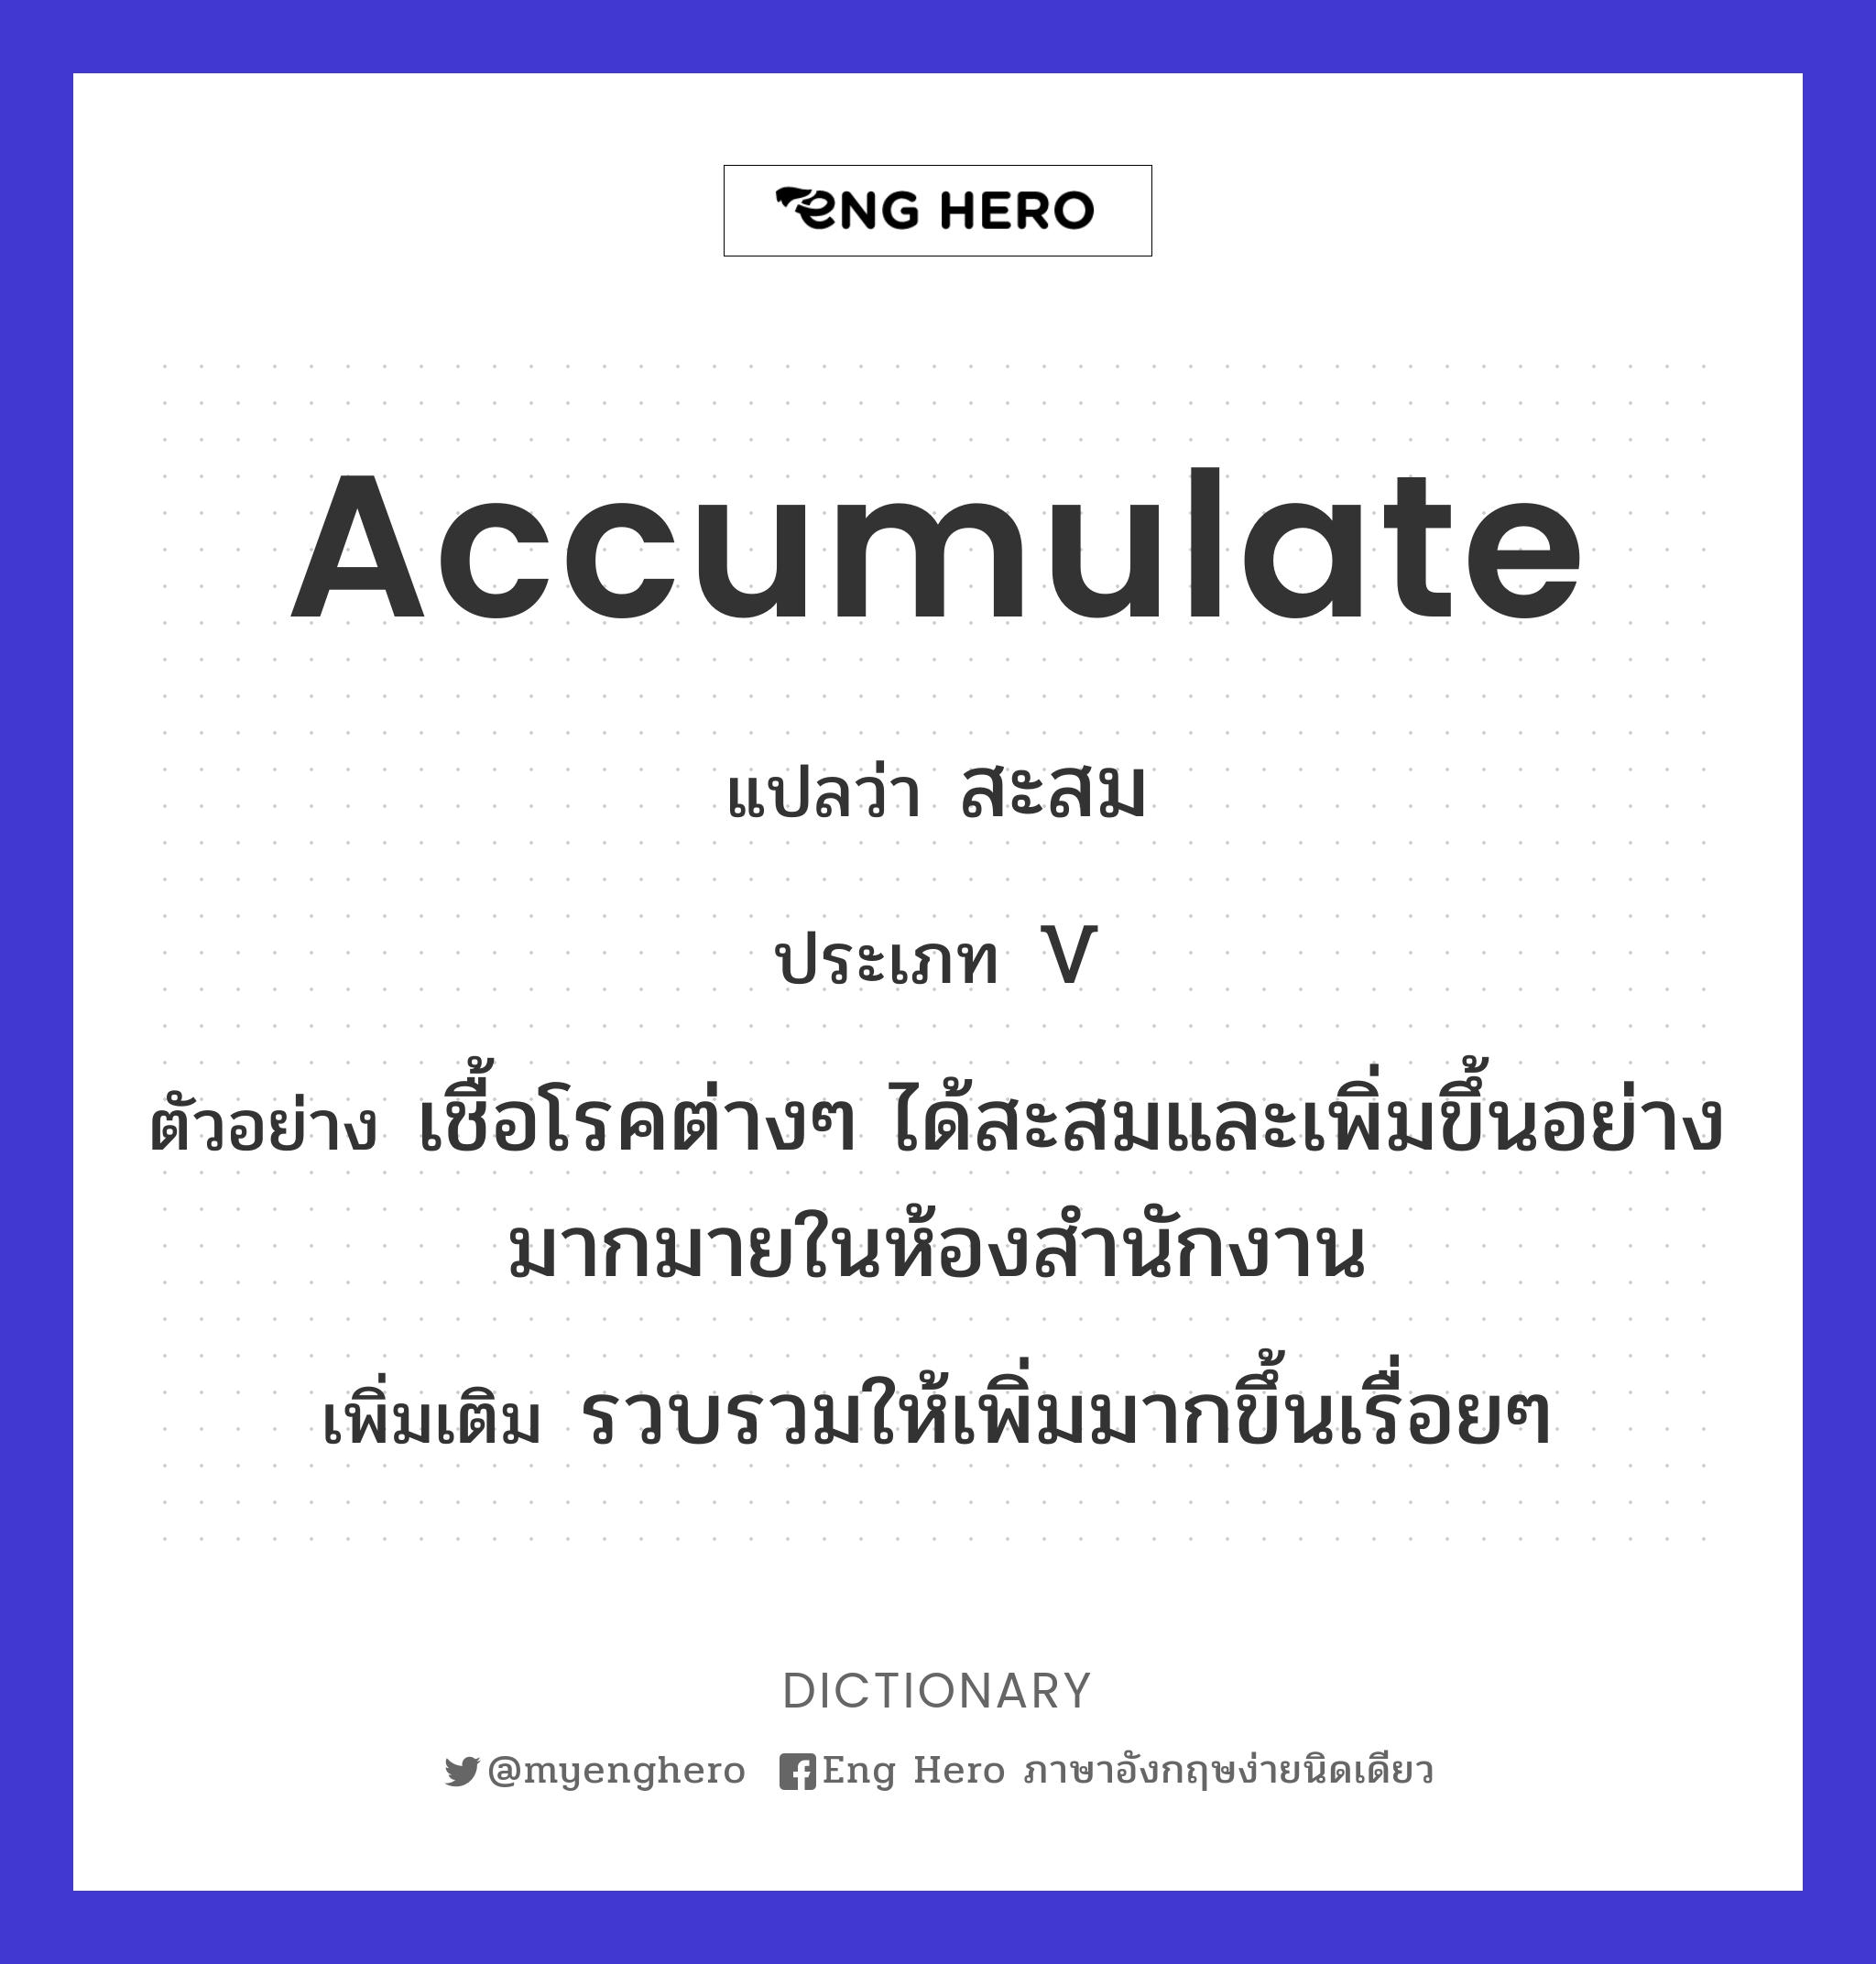 accumulate